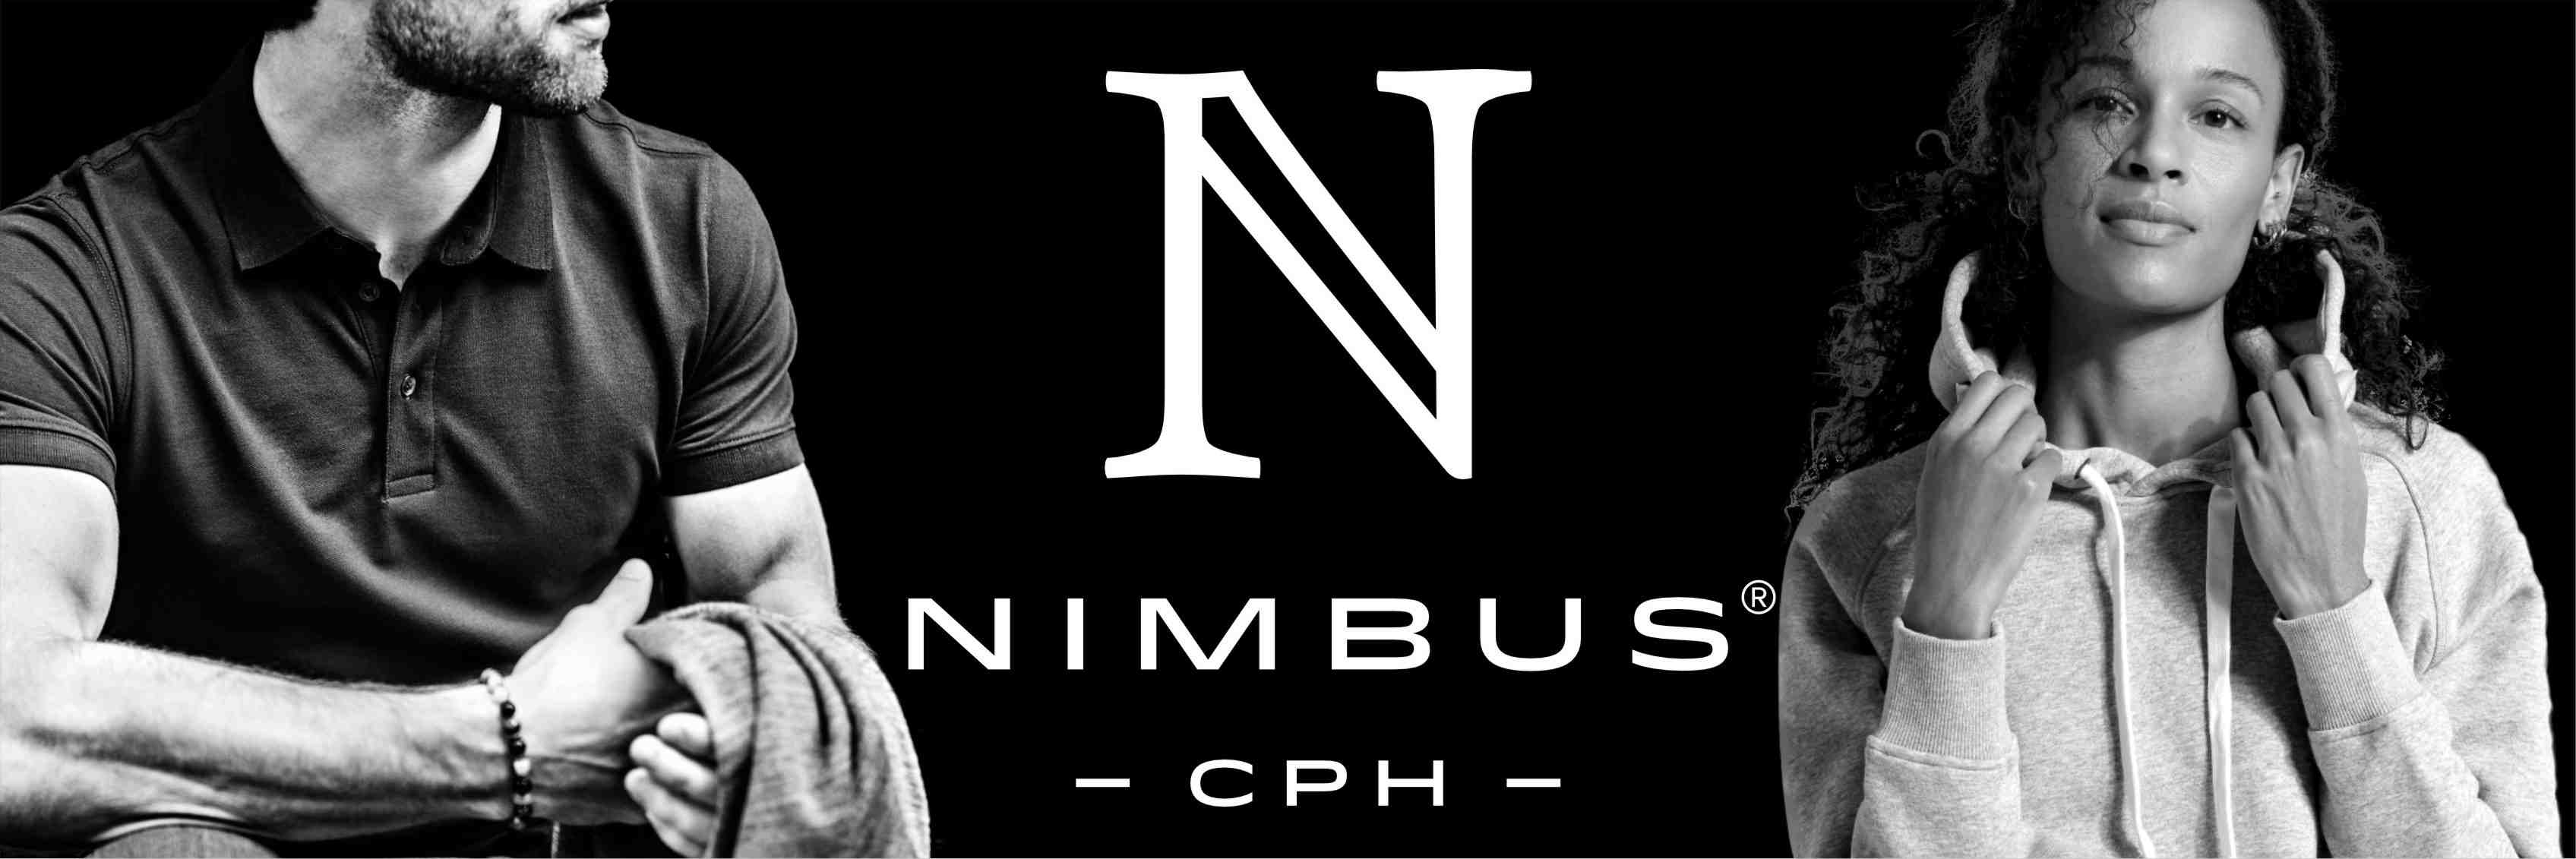 Bannerbild Nimbus Bekleidung schwarz-weiß